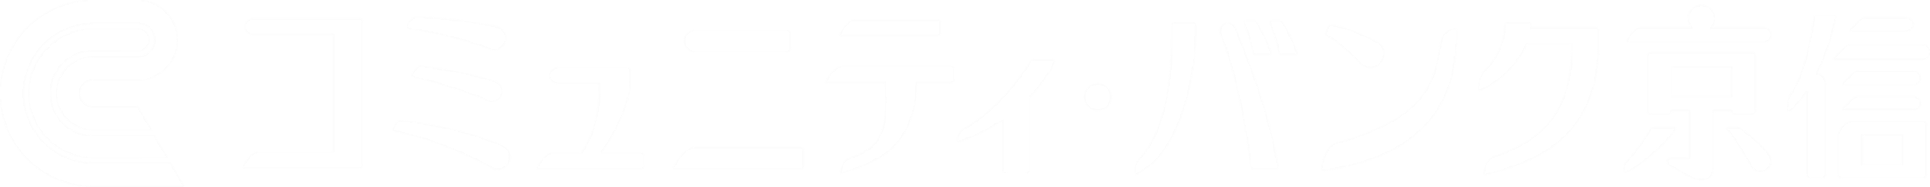 コミュニティ・バンク京信ロゴ